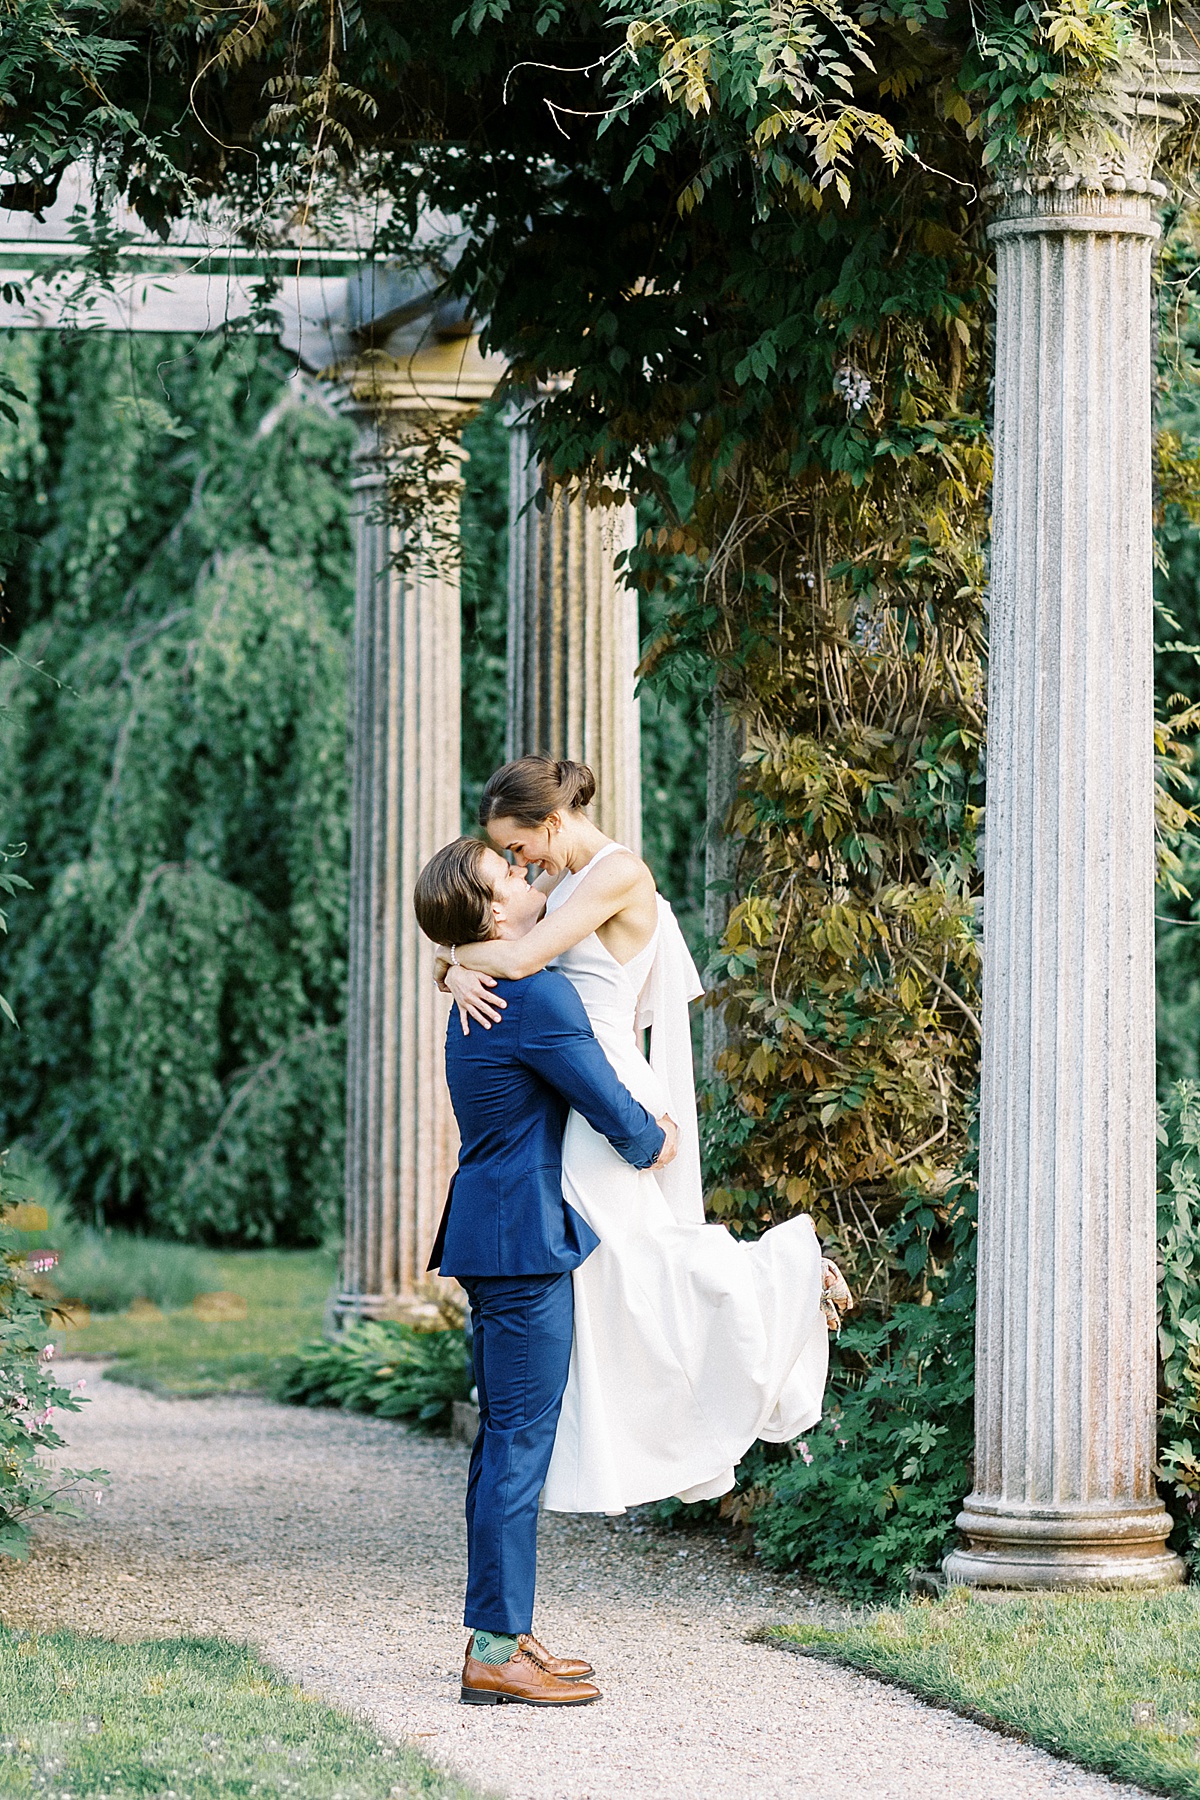 groom in blue suit sweeps bride off her feet beneath columns in garden venue shot by Massachusetts wedding photographer